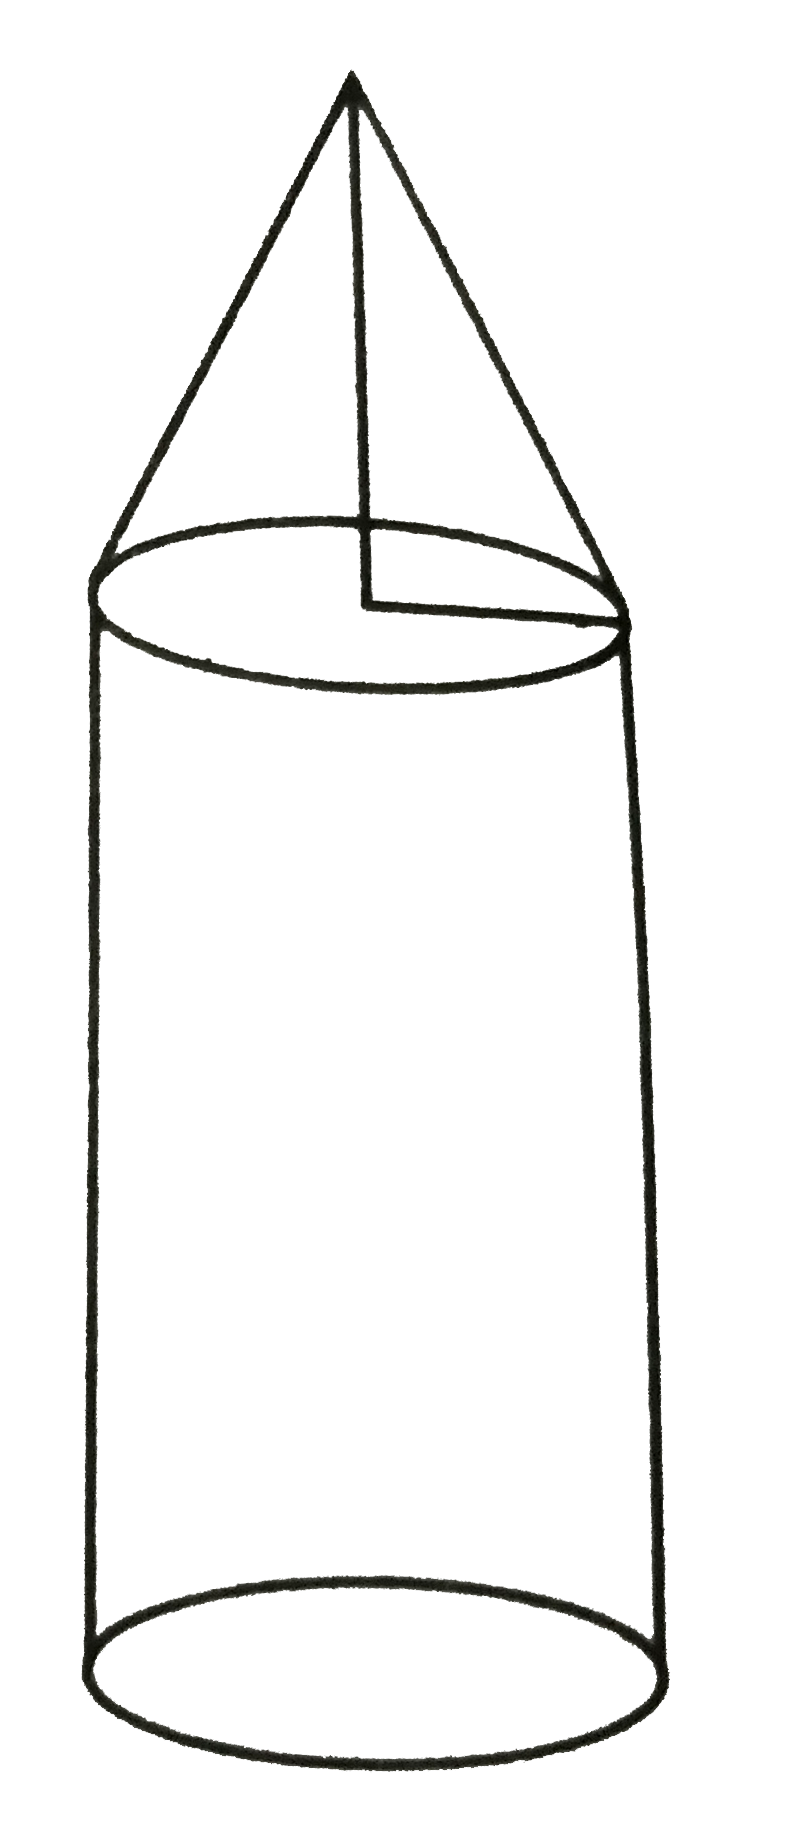 निम्नलिखित चित्र में , एक राकेट का मॉडल बेलन के ऊपर शंकु के रूप में है । मॉडल की विमाओ में , त्रिज्या =3 सेमी , शंकु की ऊंचाई , = 4 सेमी और कुल ऊंचाई 14 सेमी है । इसका (i) कुल सम्पूर्ण पृष्ठ pi